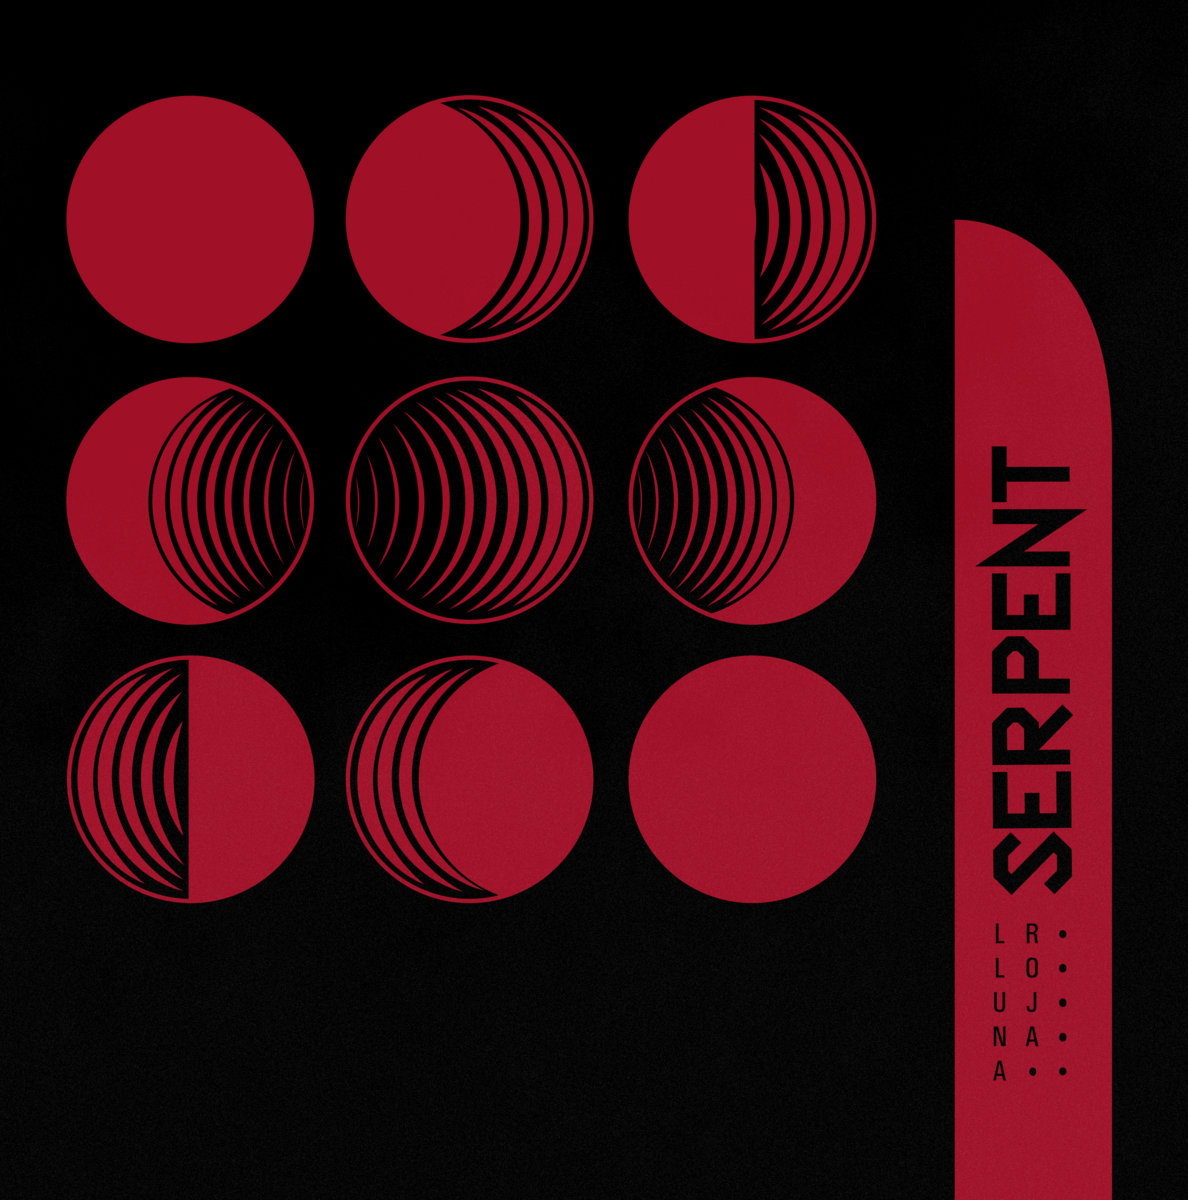 Serpent "Lluna roja" LP